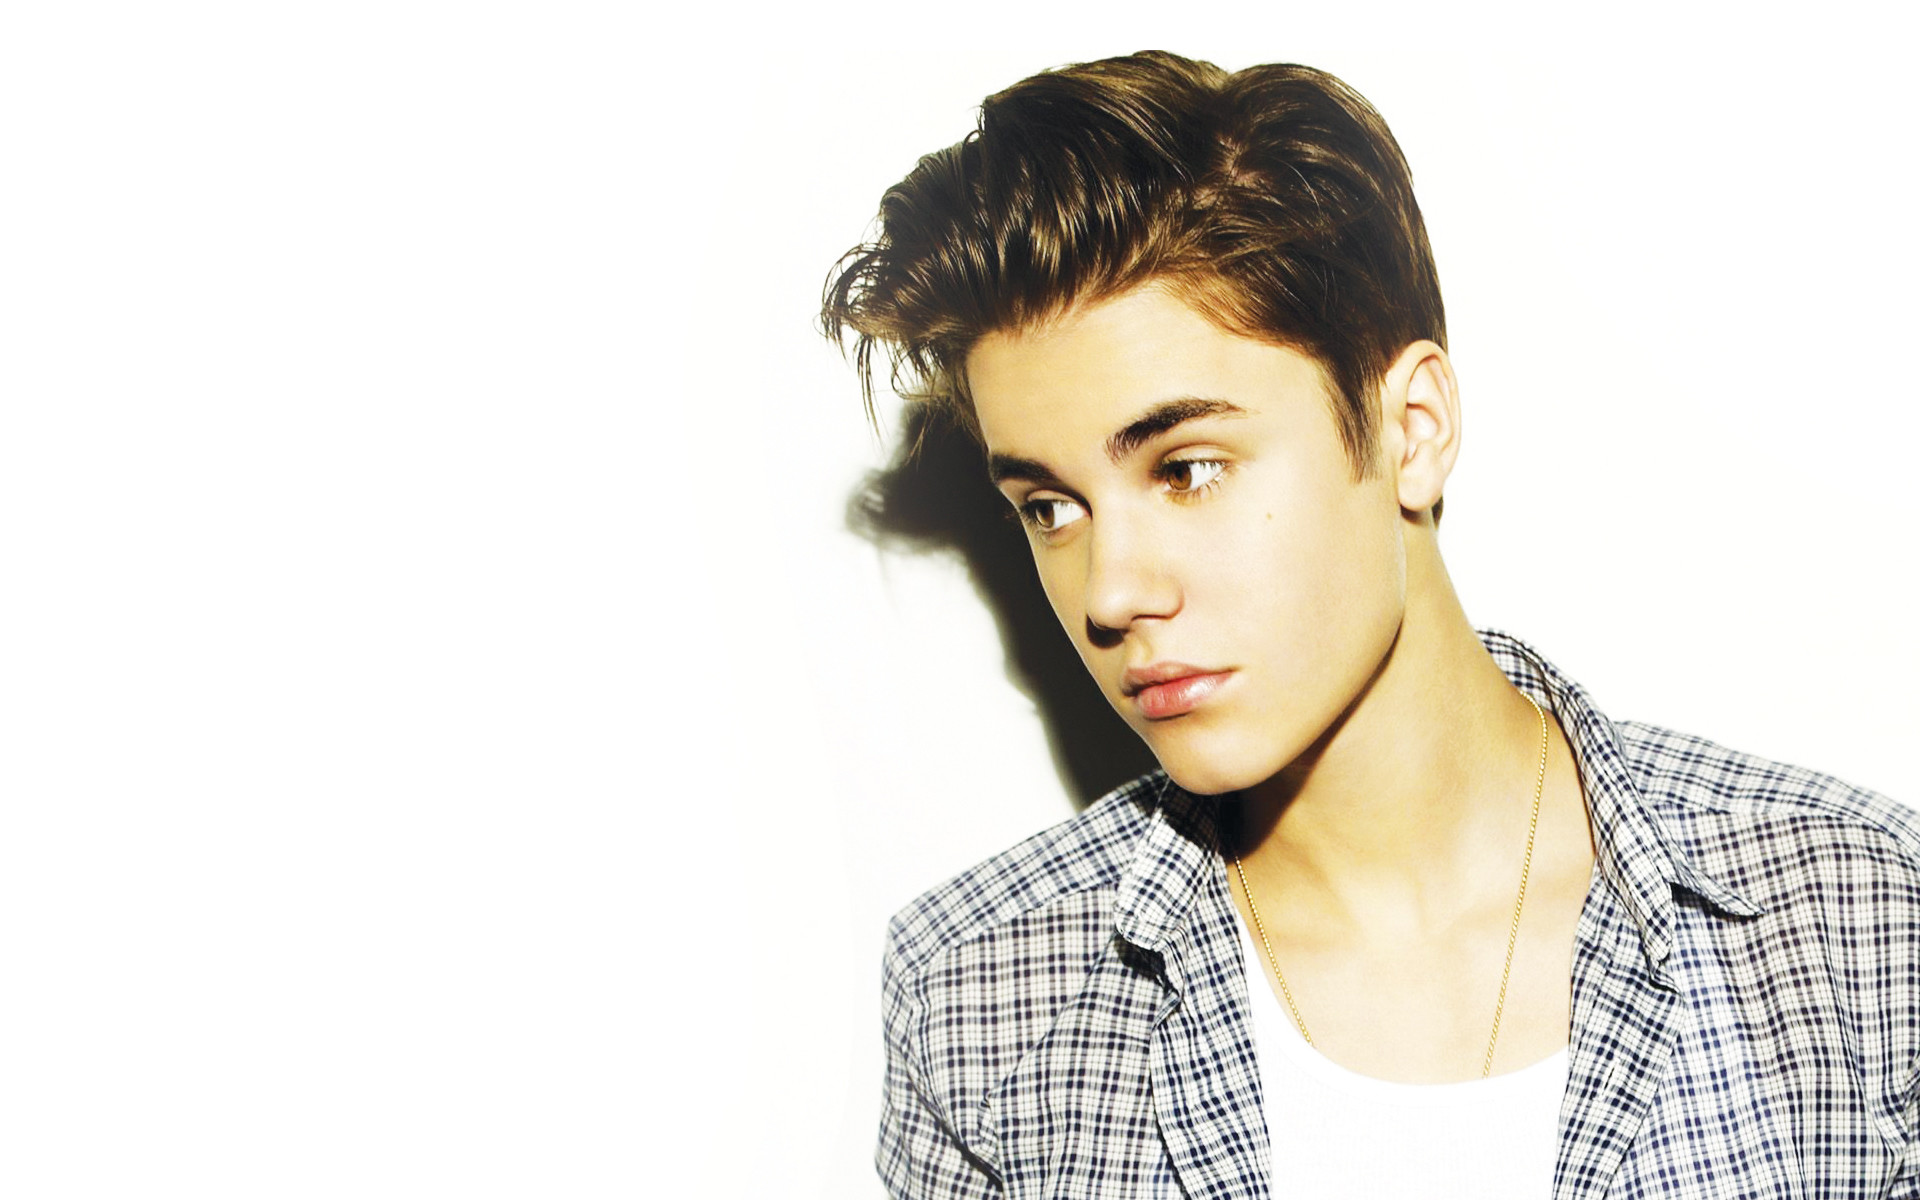 1920x1200 Wallpapers of Justin Bieber - WallpaperSafari